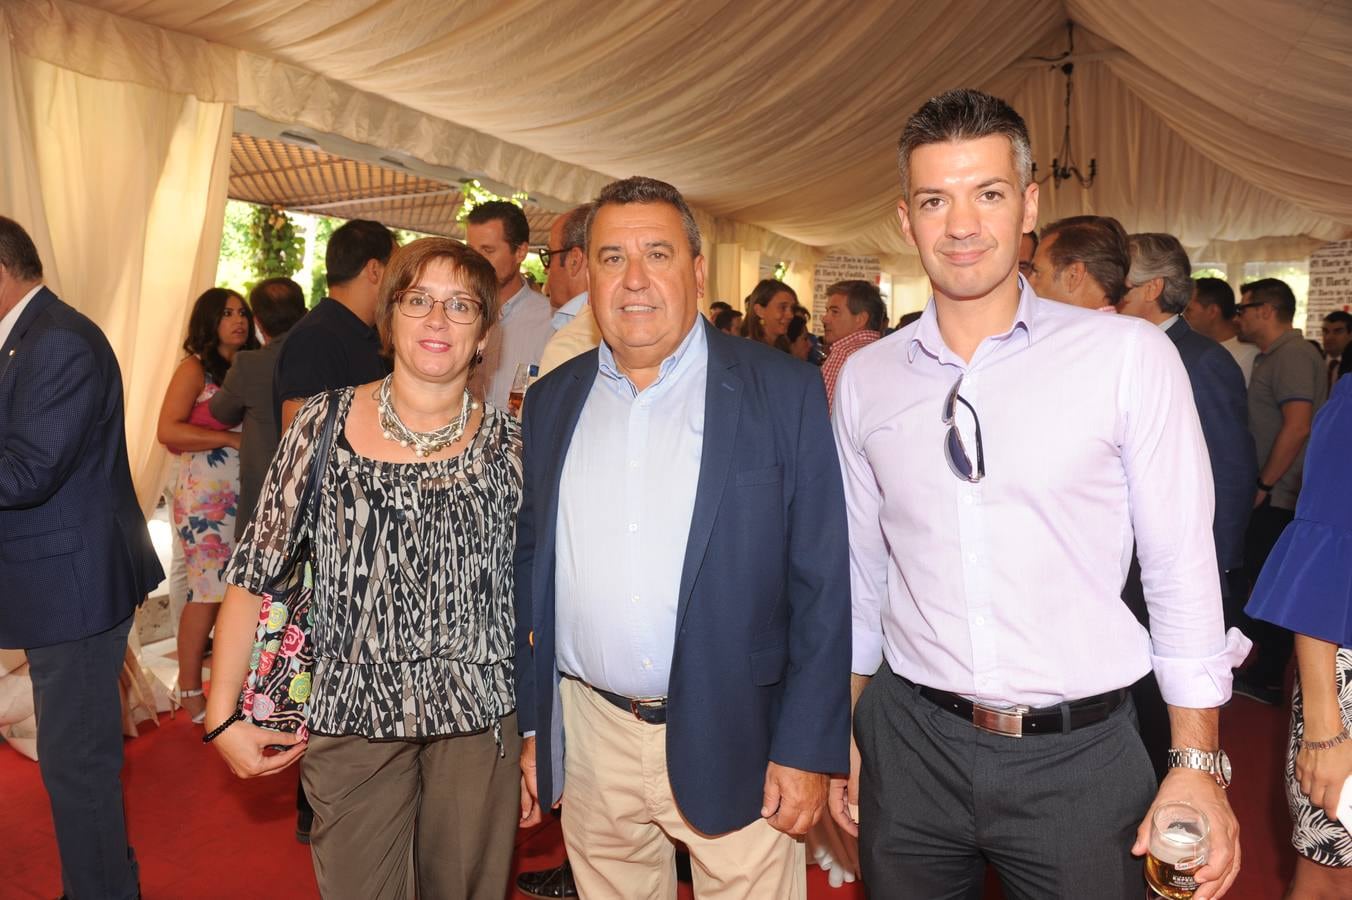 Del Ayuntamiento de Arroyo nos visitaron Mar Redondo, el alcalde, José Manuel Barrio, y Rubén Raedo.